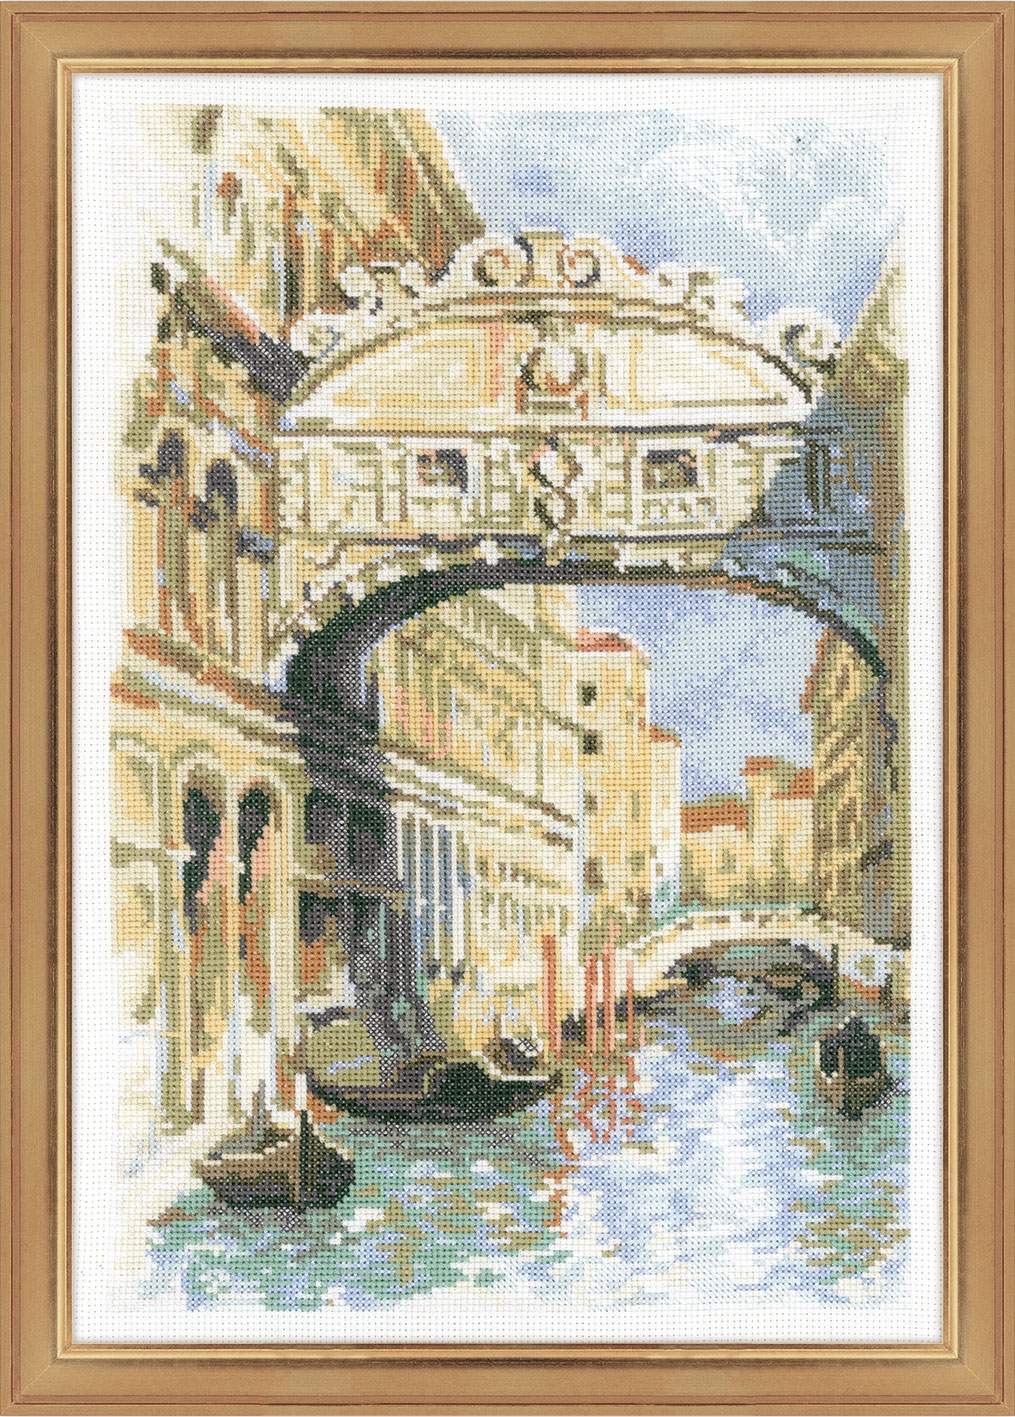 Most v Benátkách